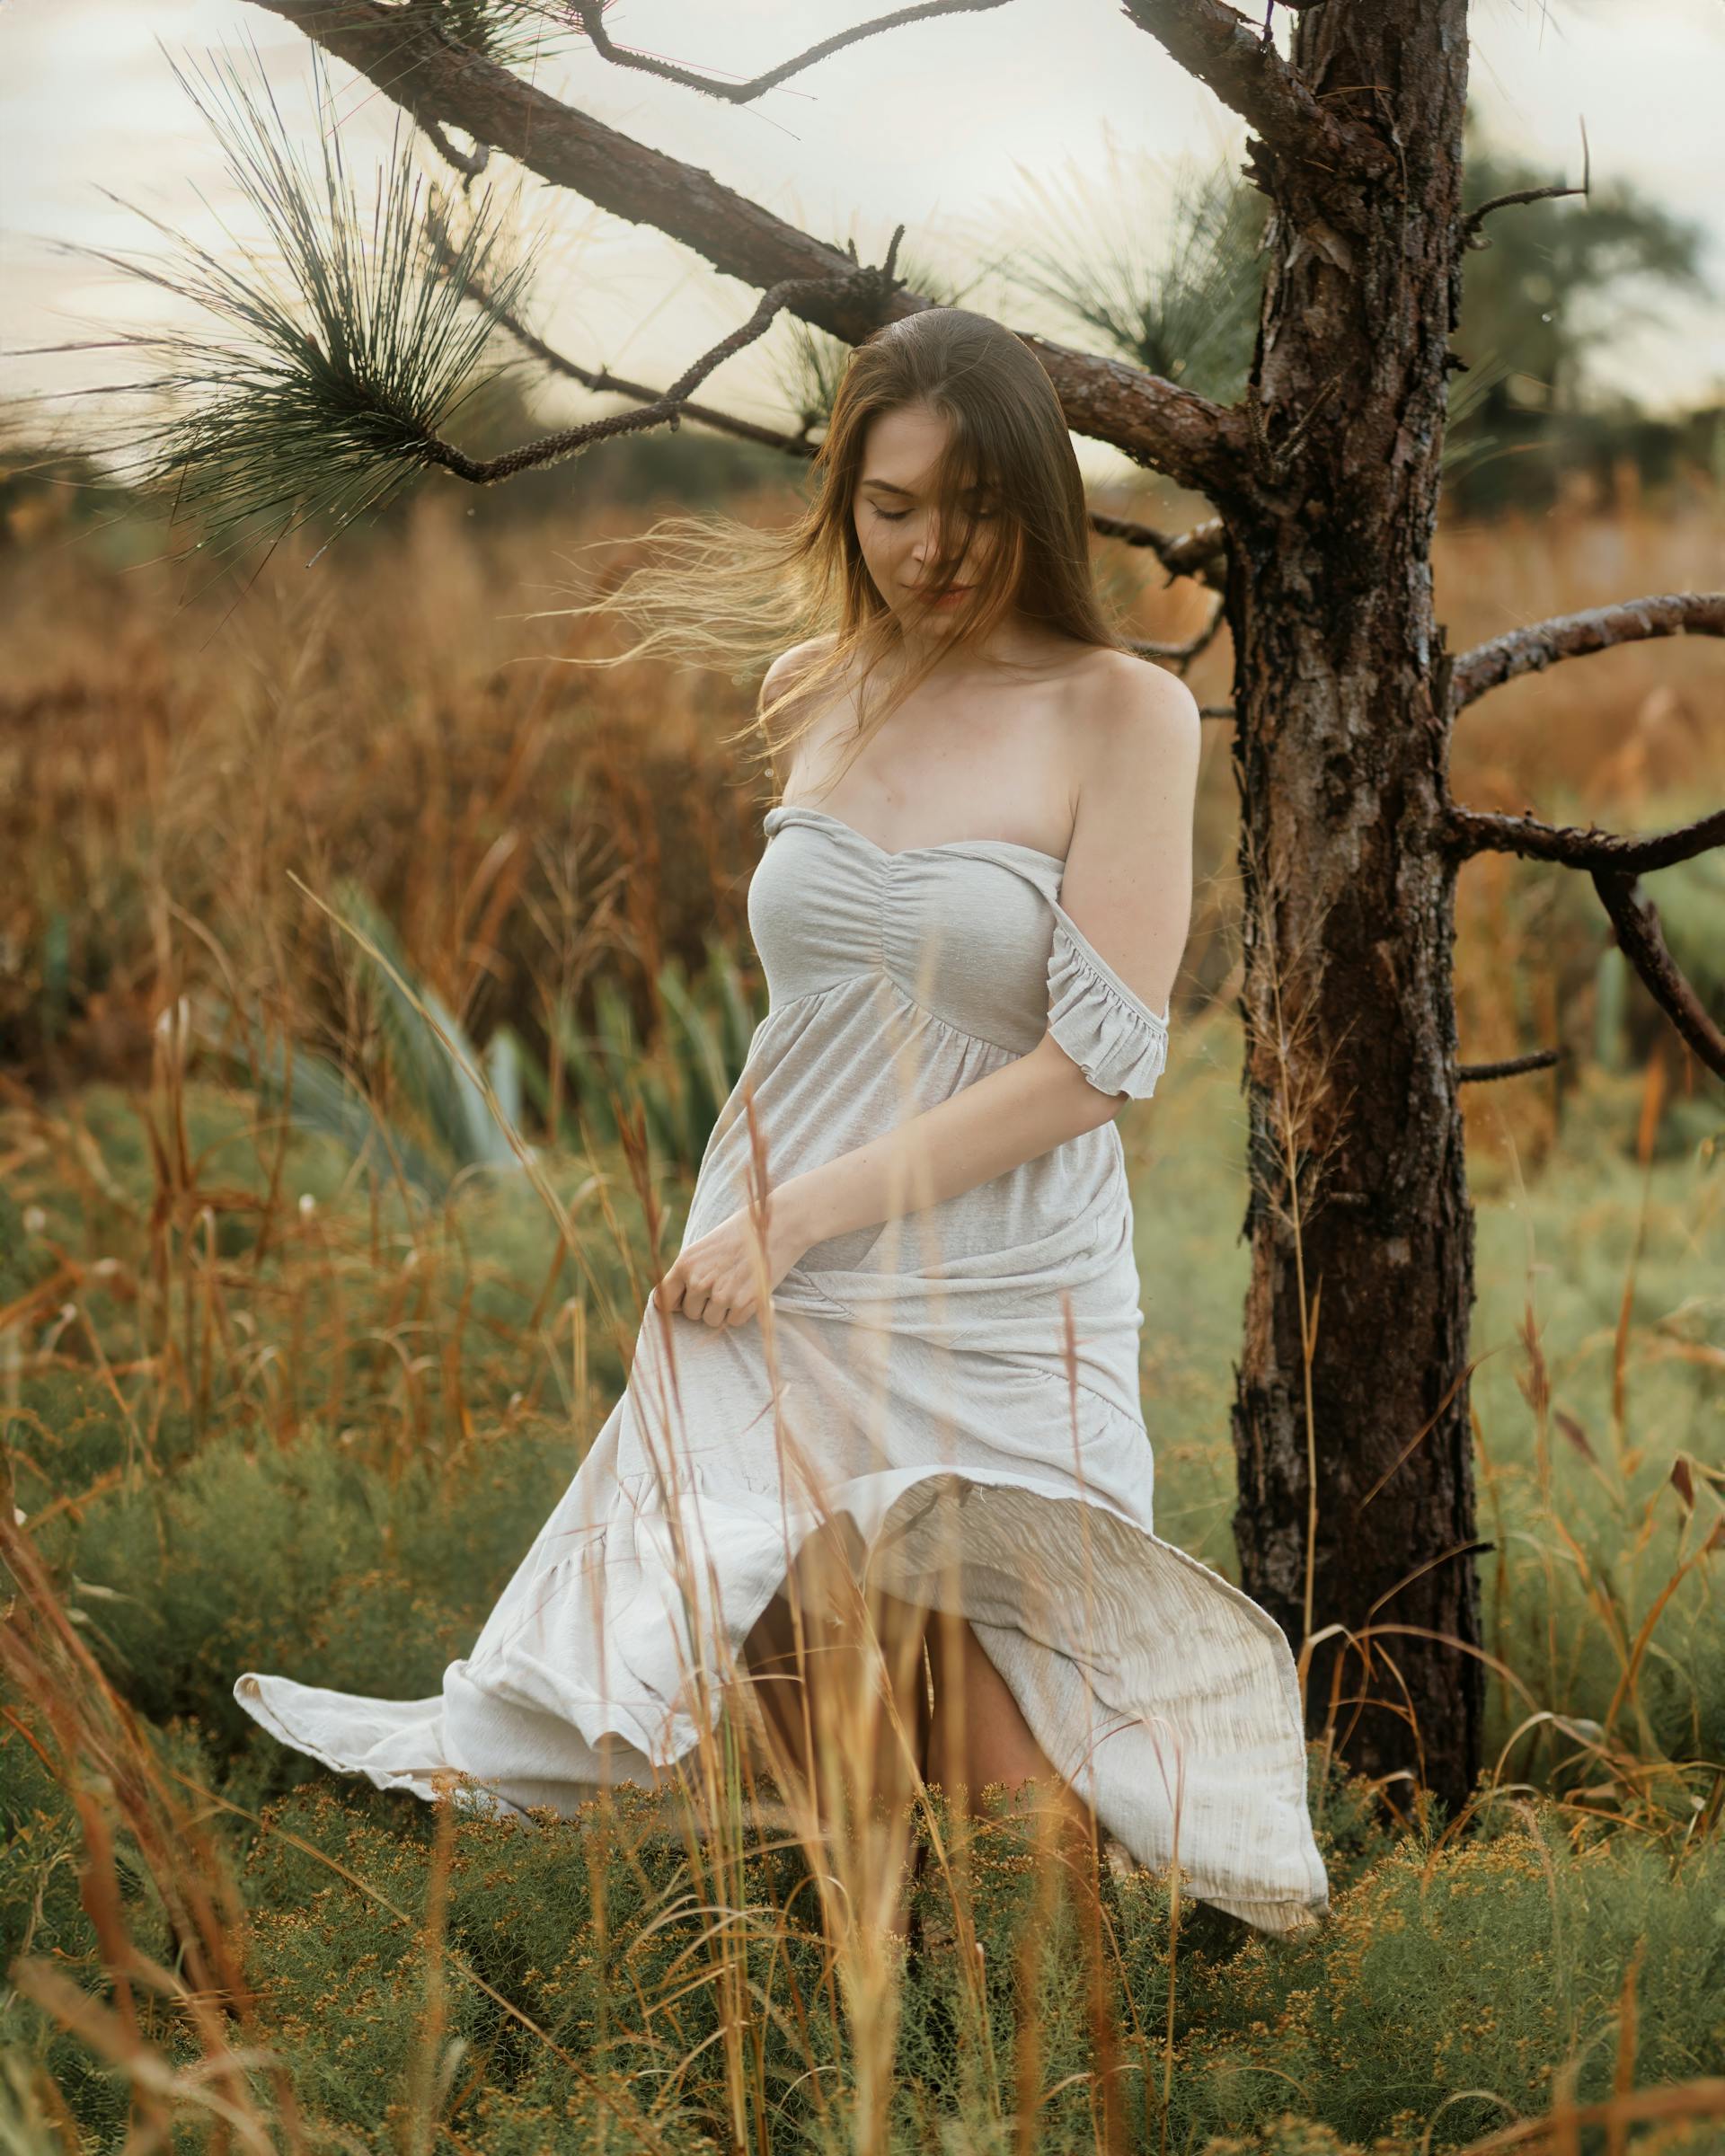 Une jeune femme en robe blanche dans un champ | Source : Pexels